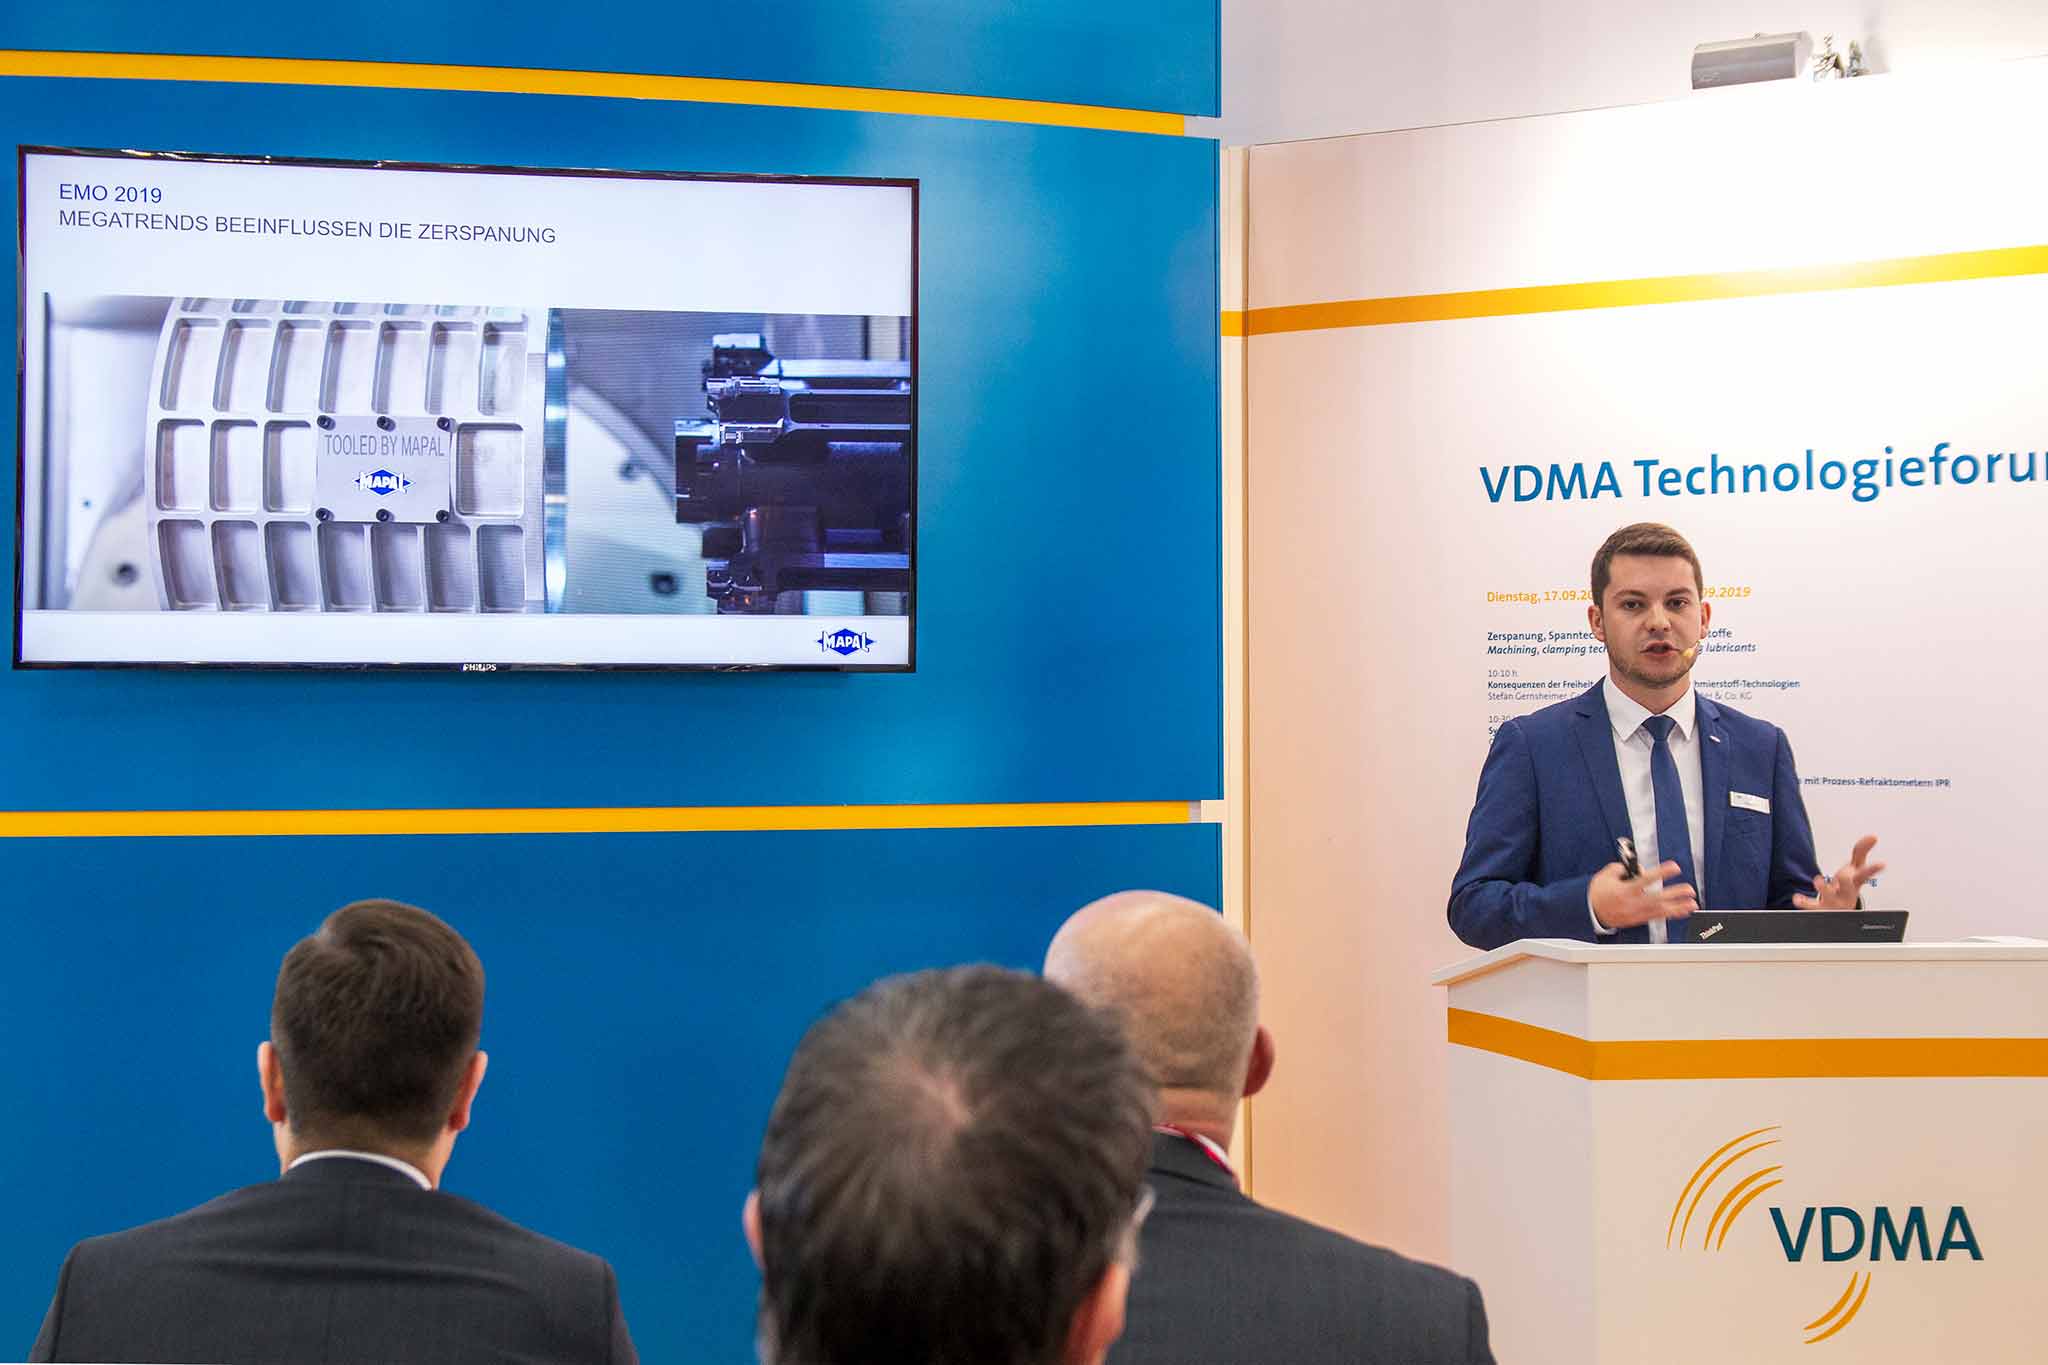 Dennis Minder spricht beim VDMA-Technologieforum. Er ist rechts im Bild, links wird groß seine Präsentation angezeigt.